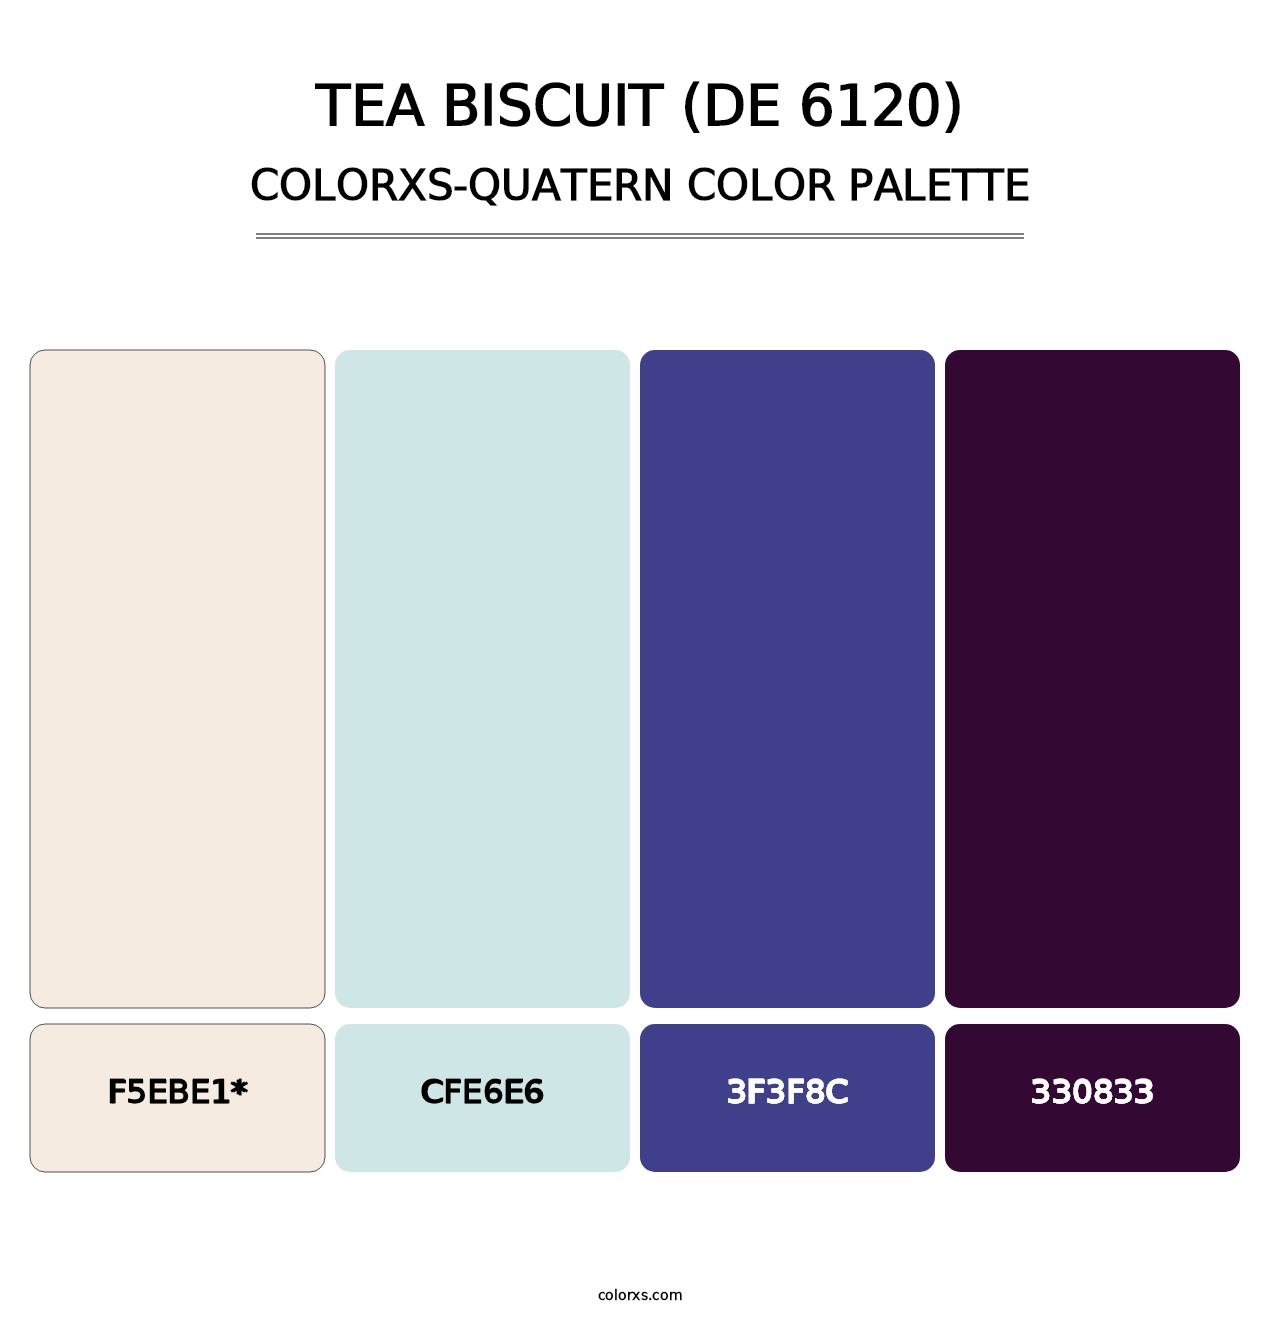 Tea Biscuit (DE 6120) - Colorxs Quatern Palette